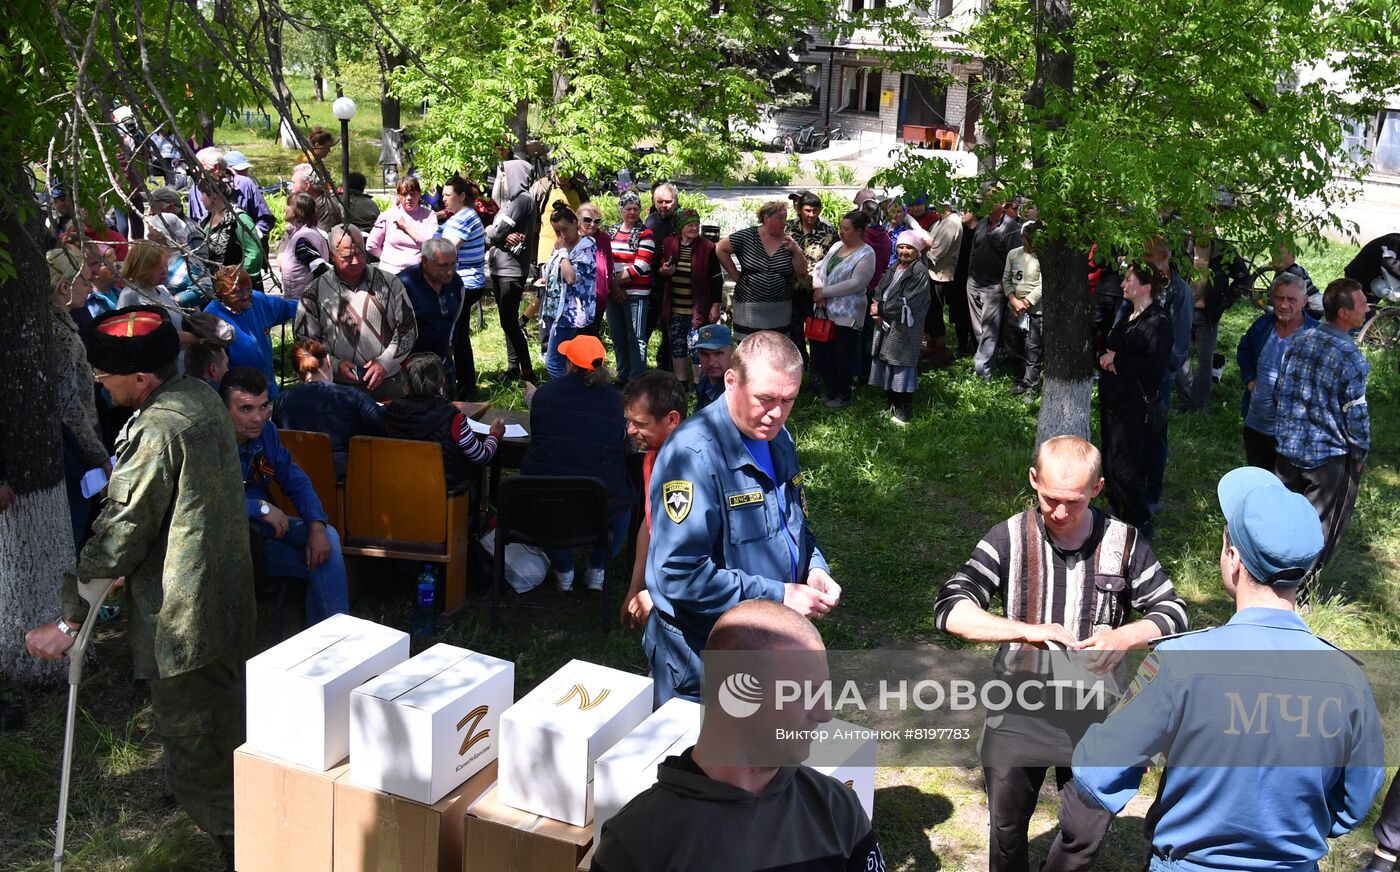 Раздача гумпомощи на освобожденных территориях в Донецкой области